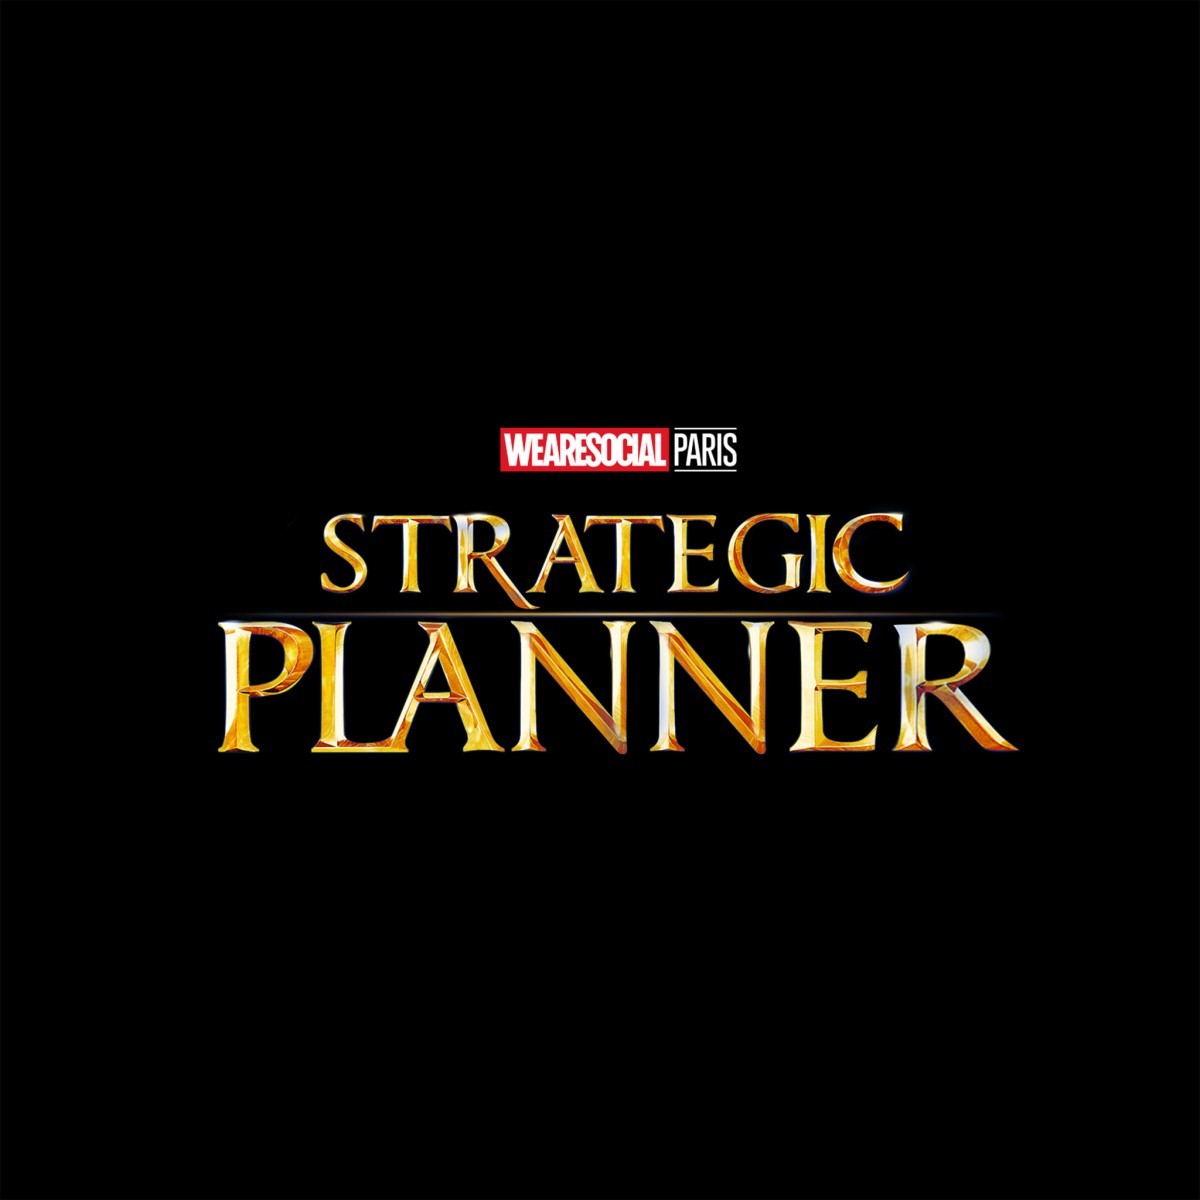 strategic planner là gì